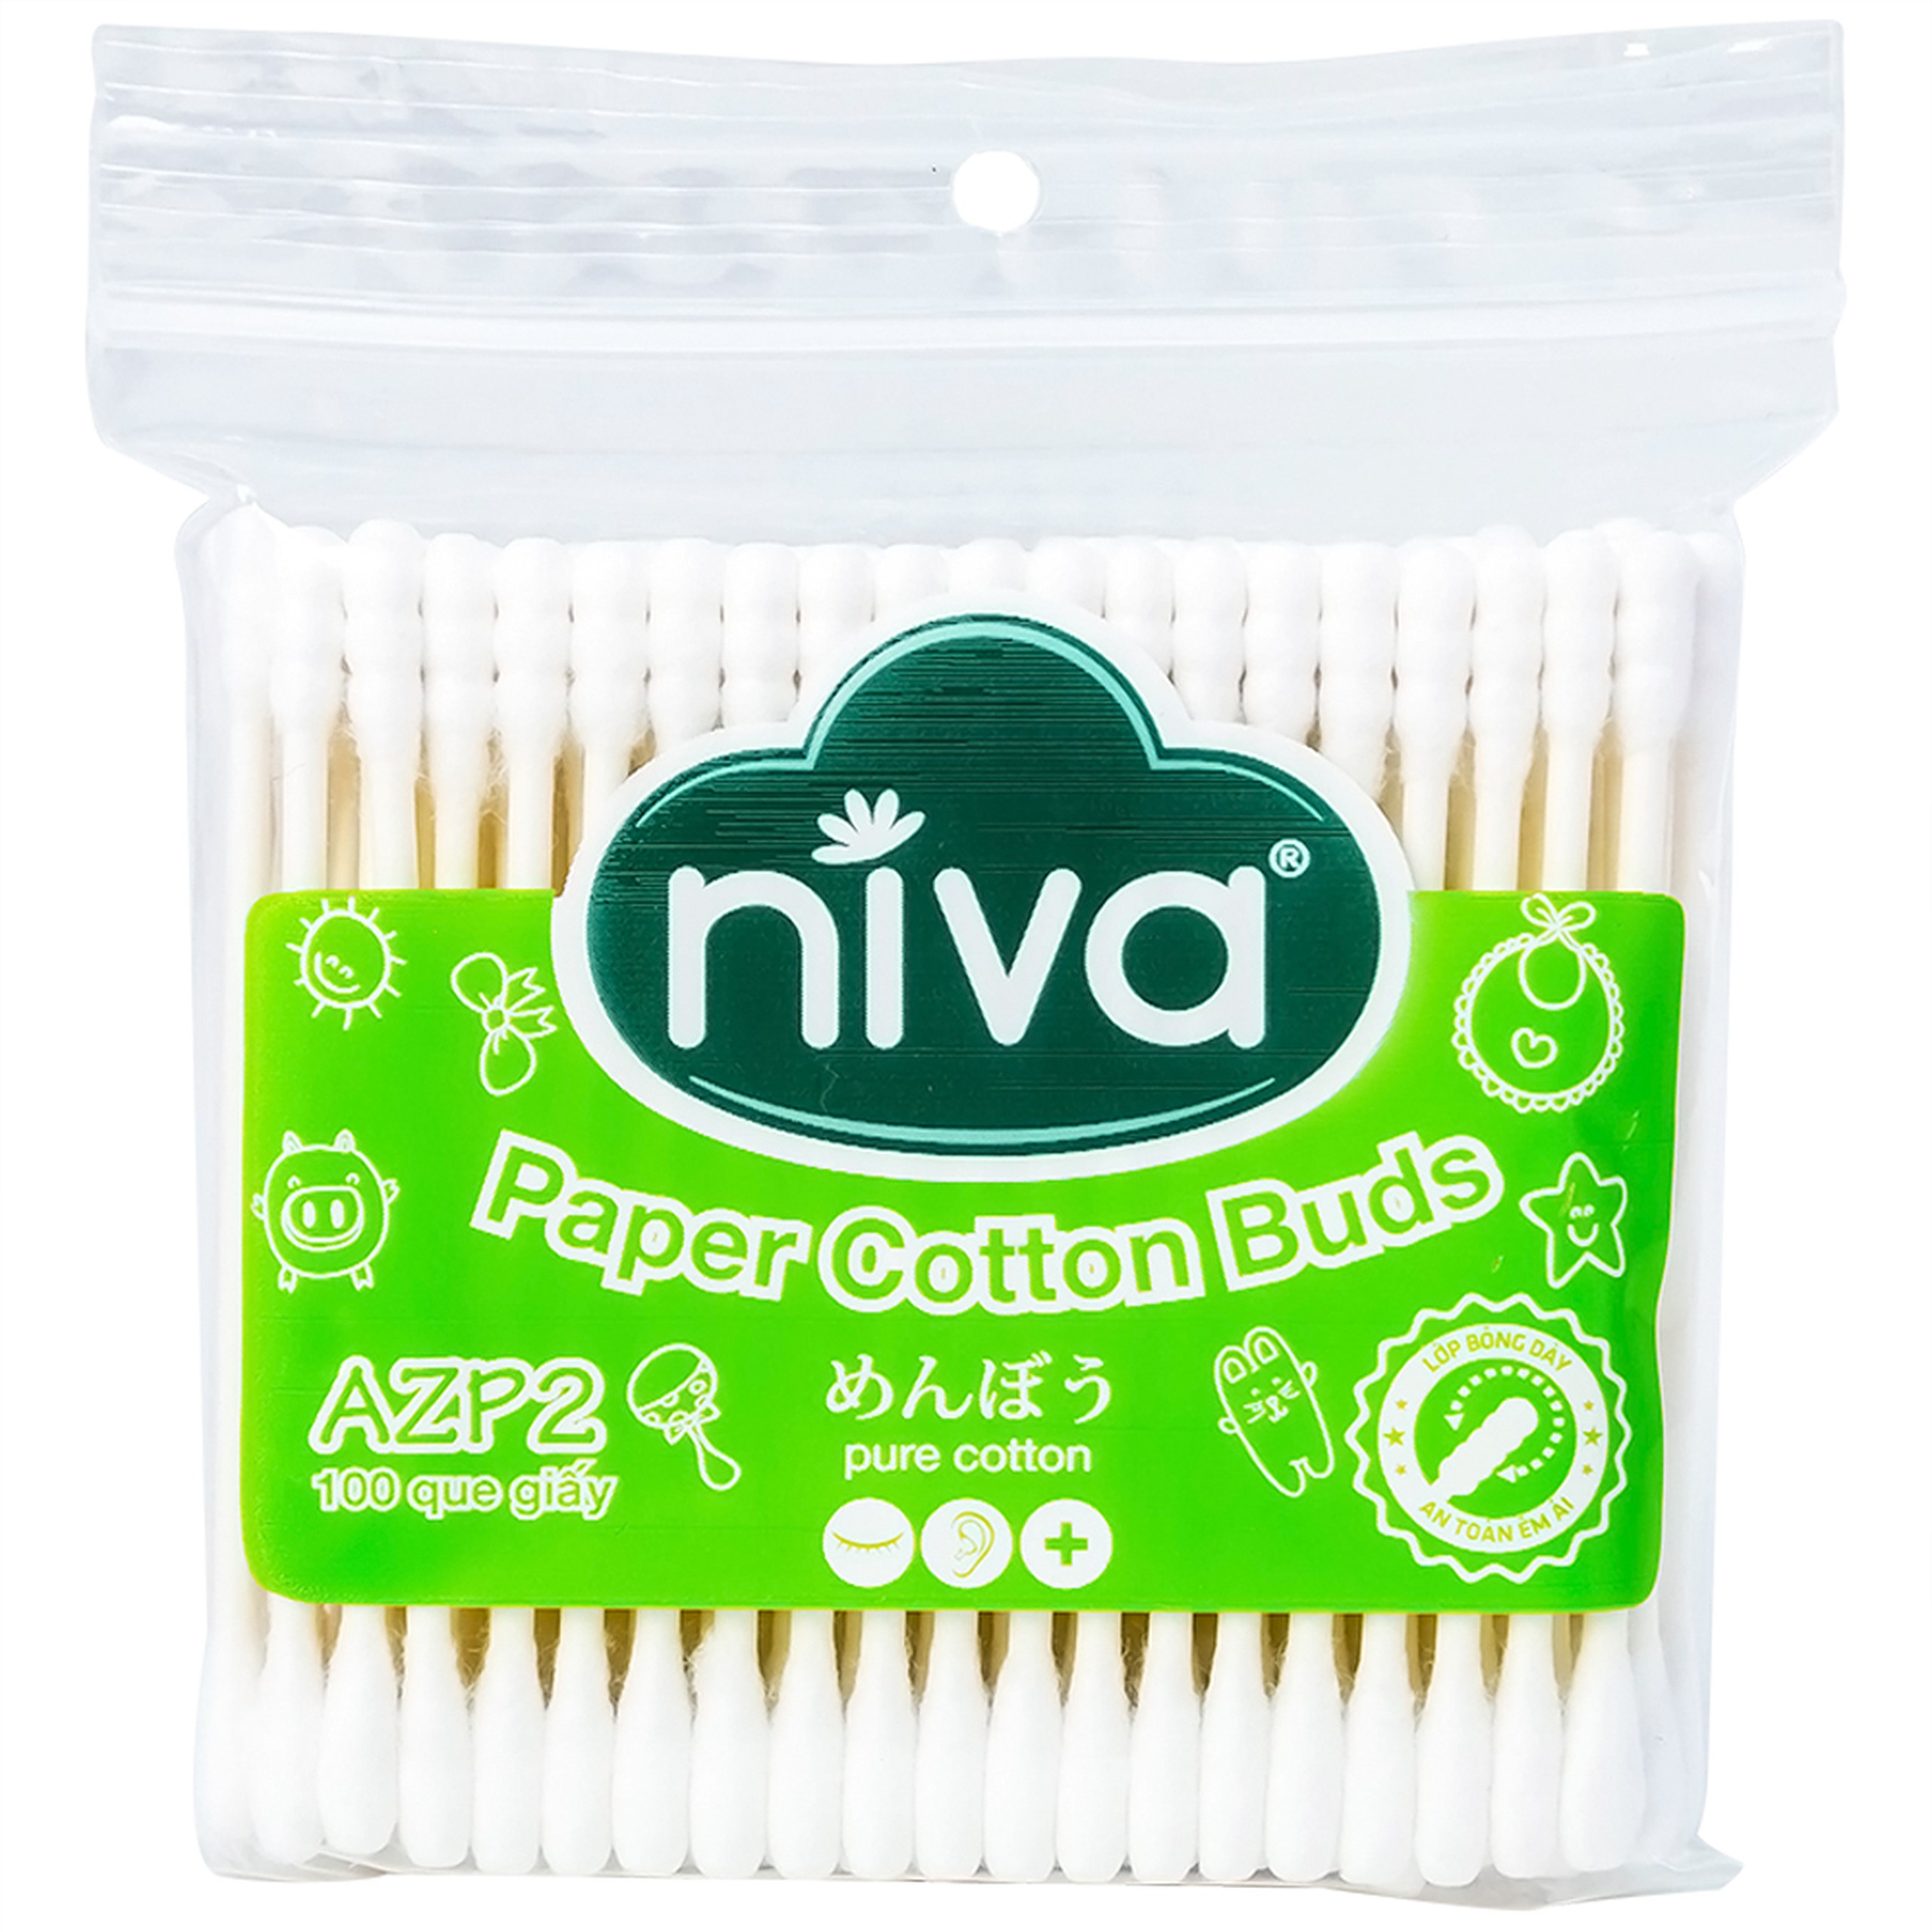 Tăm bông Niva AZP2 Paper Cotton Buds túi zip 1 đầu tròn 1 đầu xoắn vệ sinh tai, mũi, vết thương (100 que)